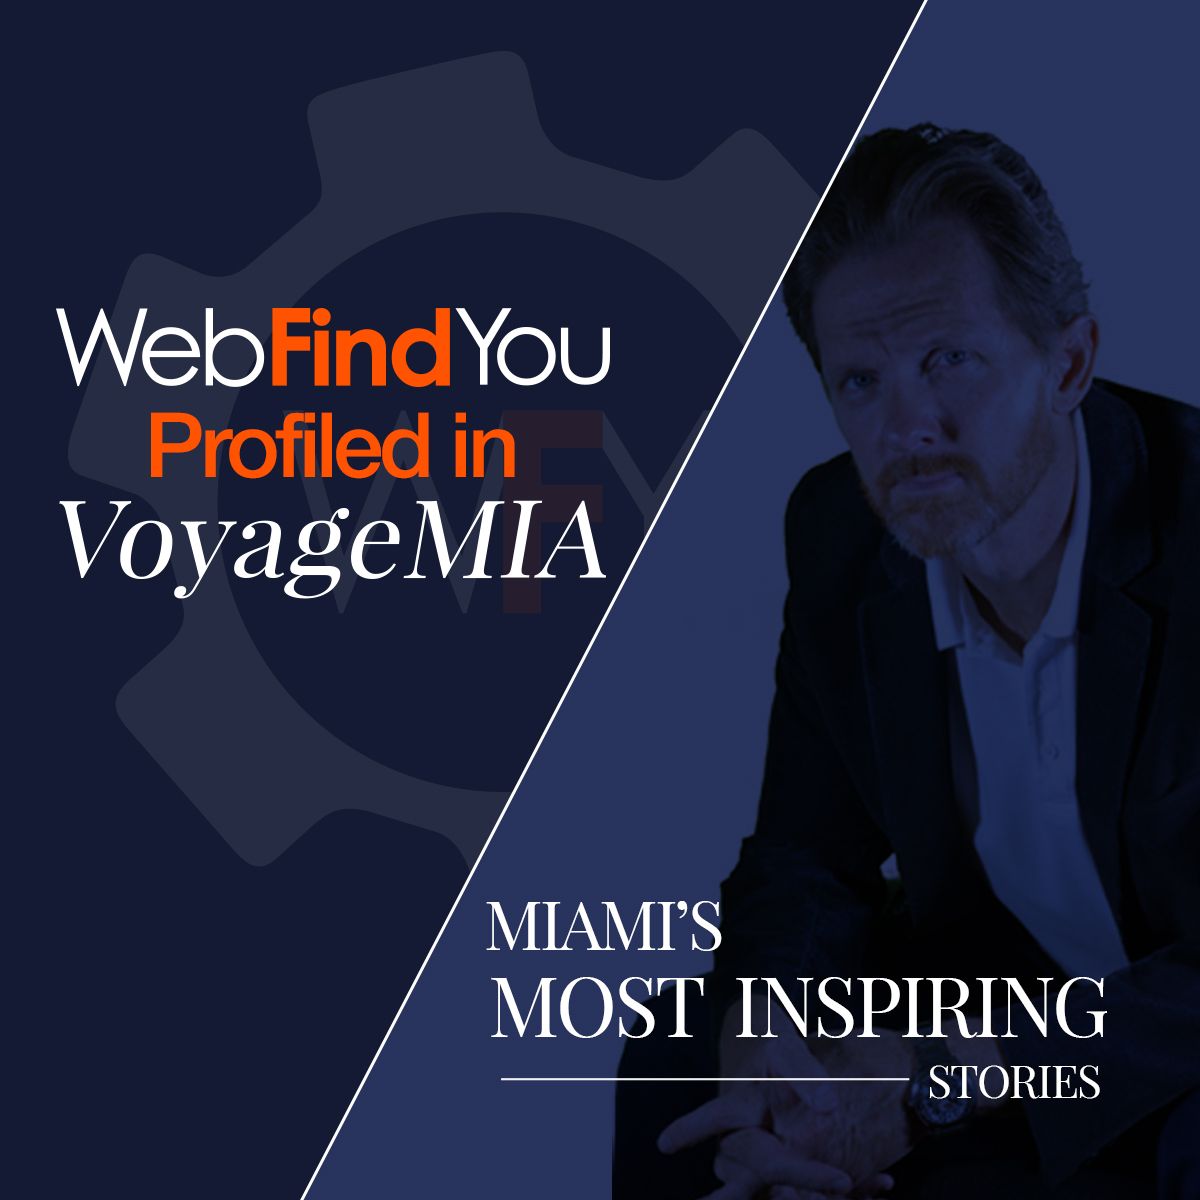 WebFindYou Profiled in VoyageMIA